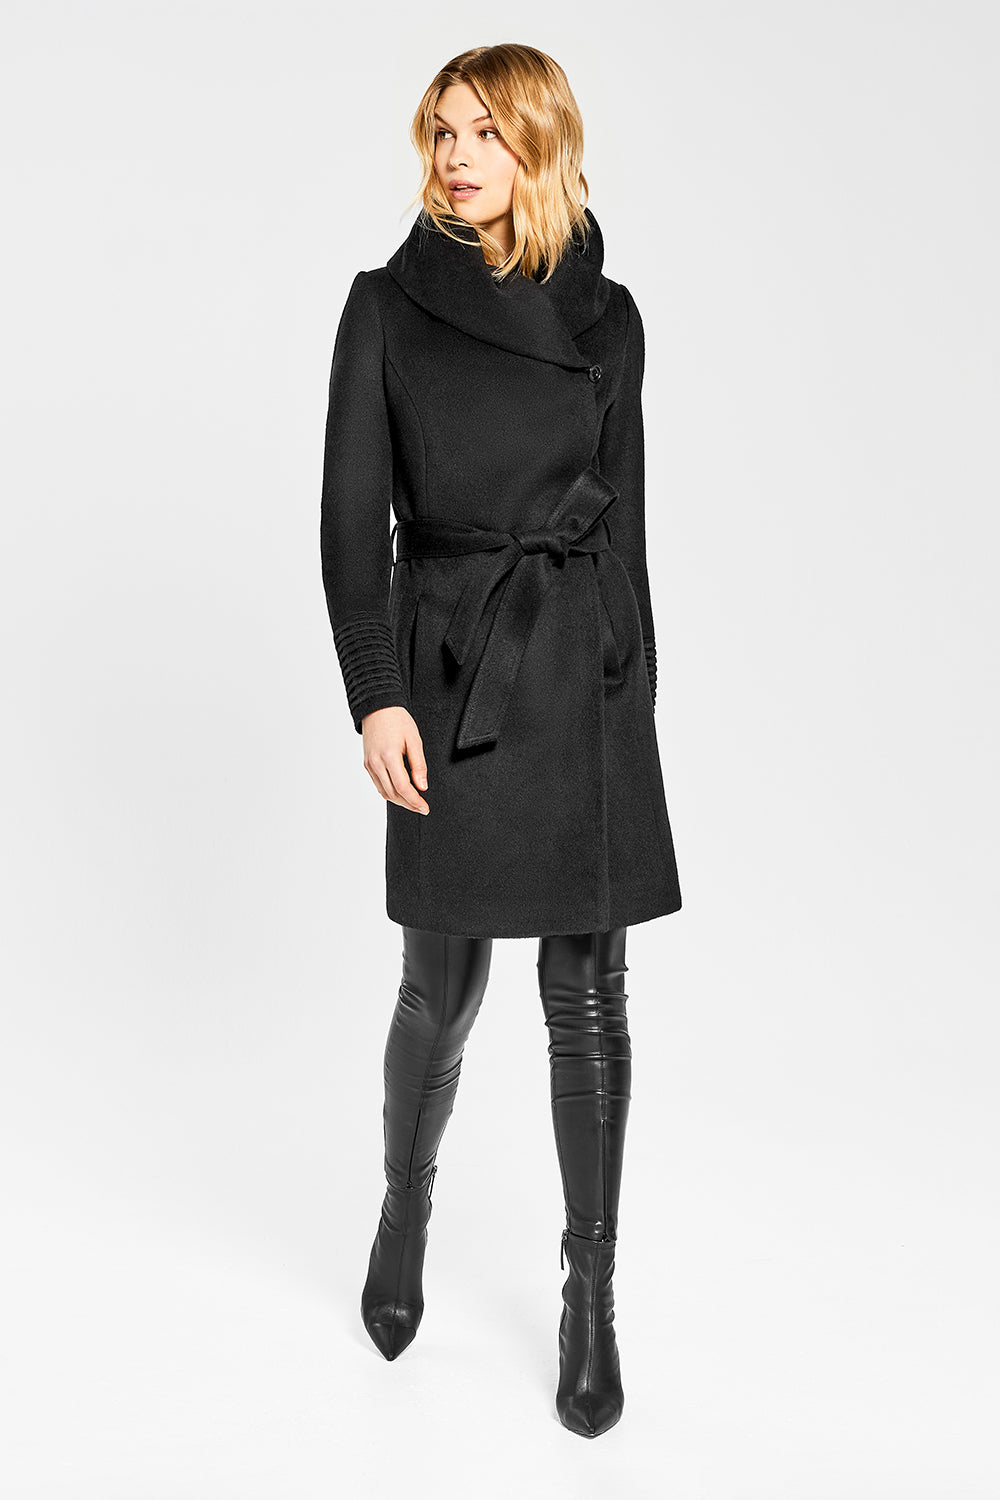 SENTALER Bouclé Alpaca Long Hooded Wrap Coat in Black - Size S